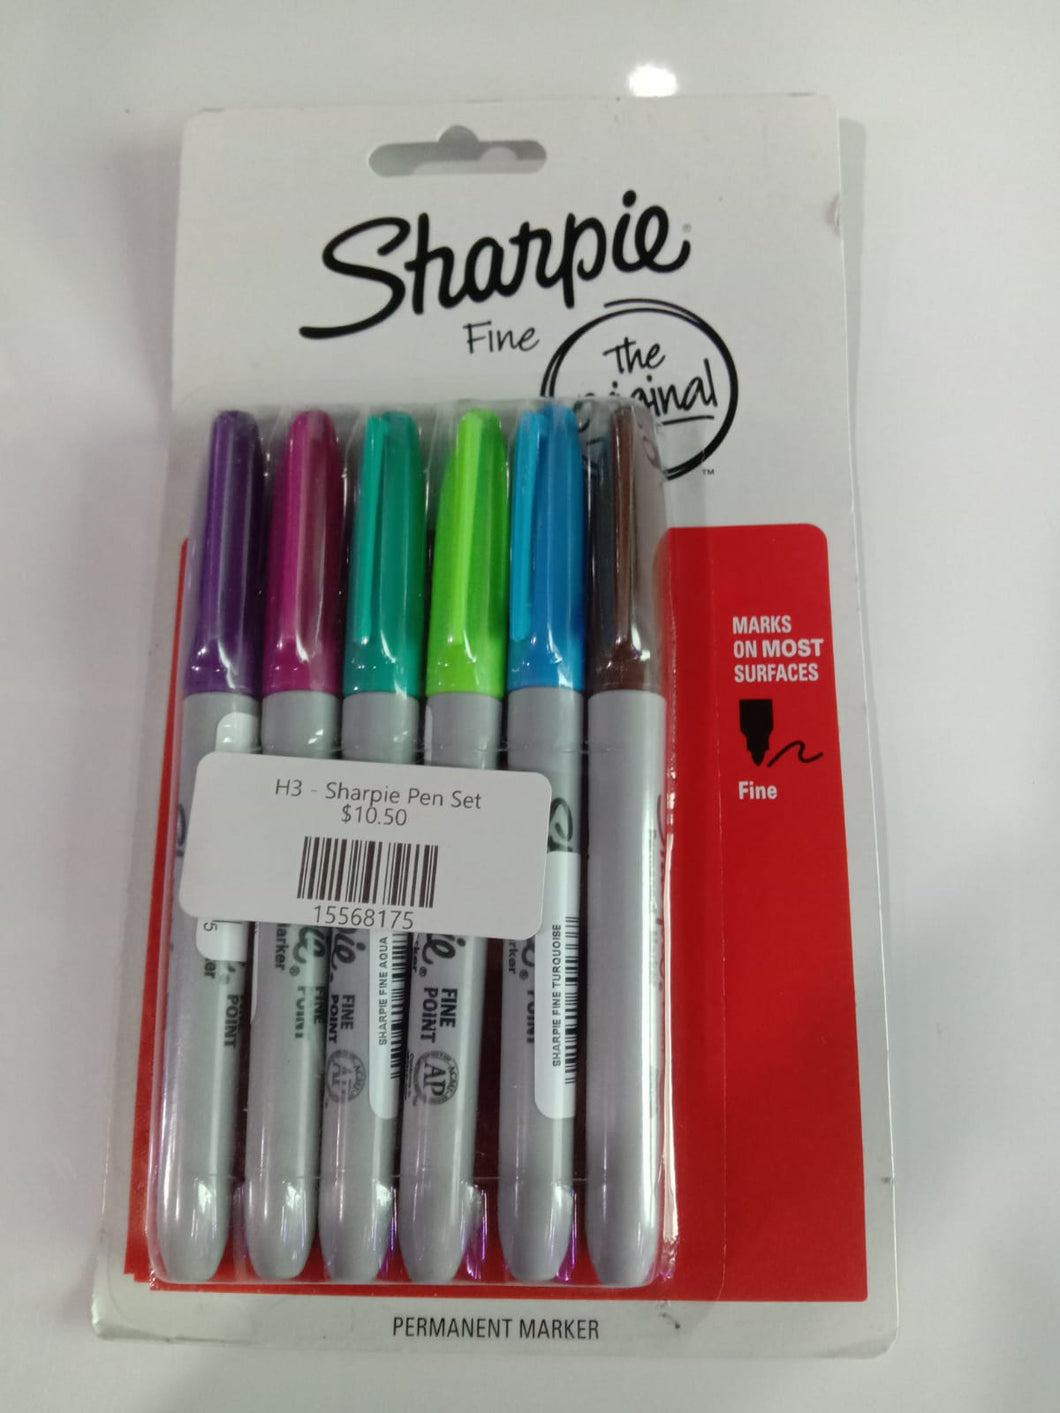 H3 - Sharpie Pen Set